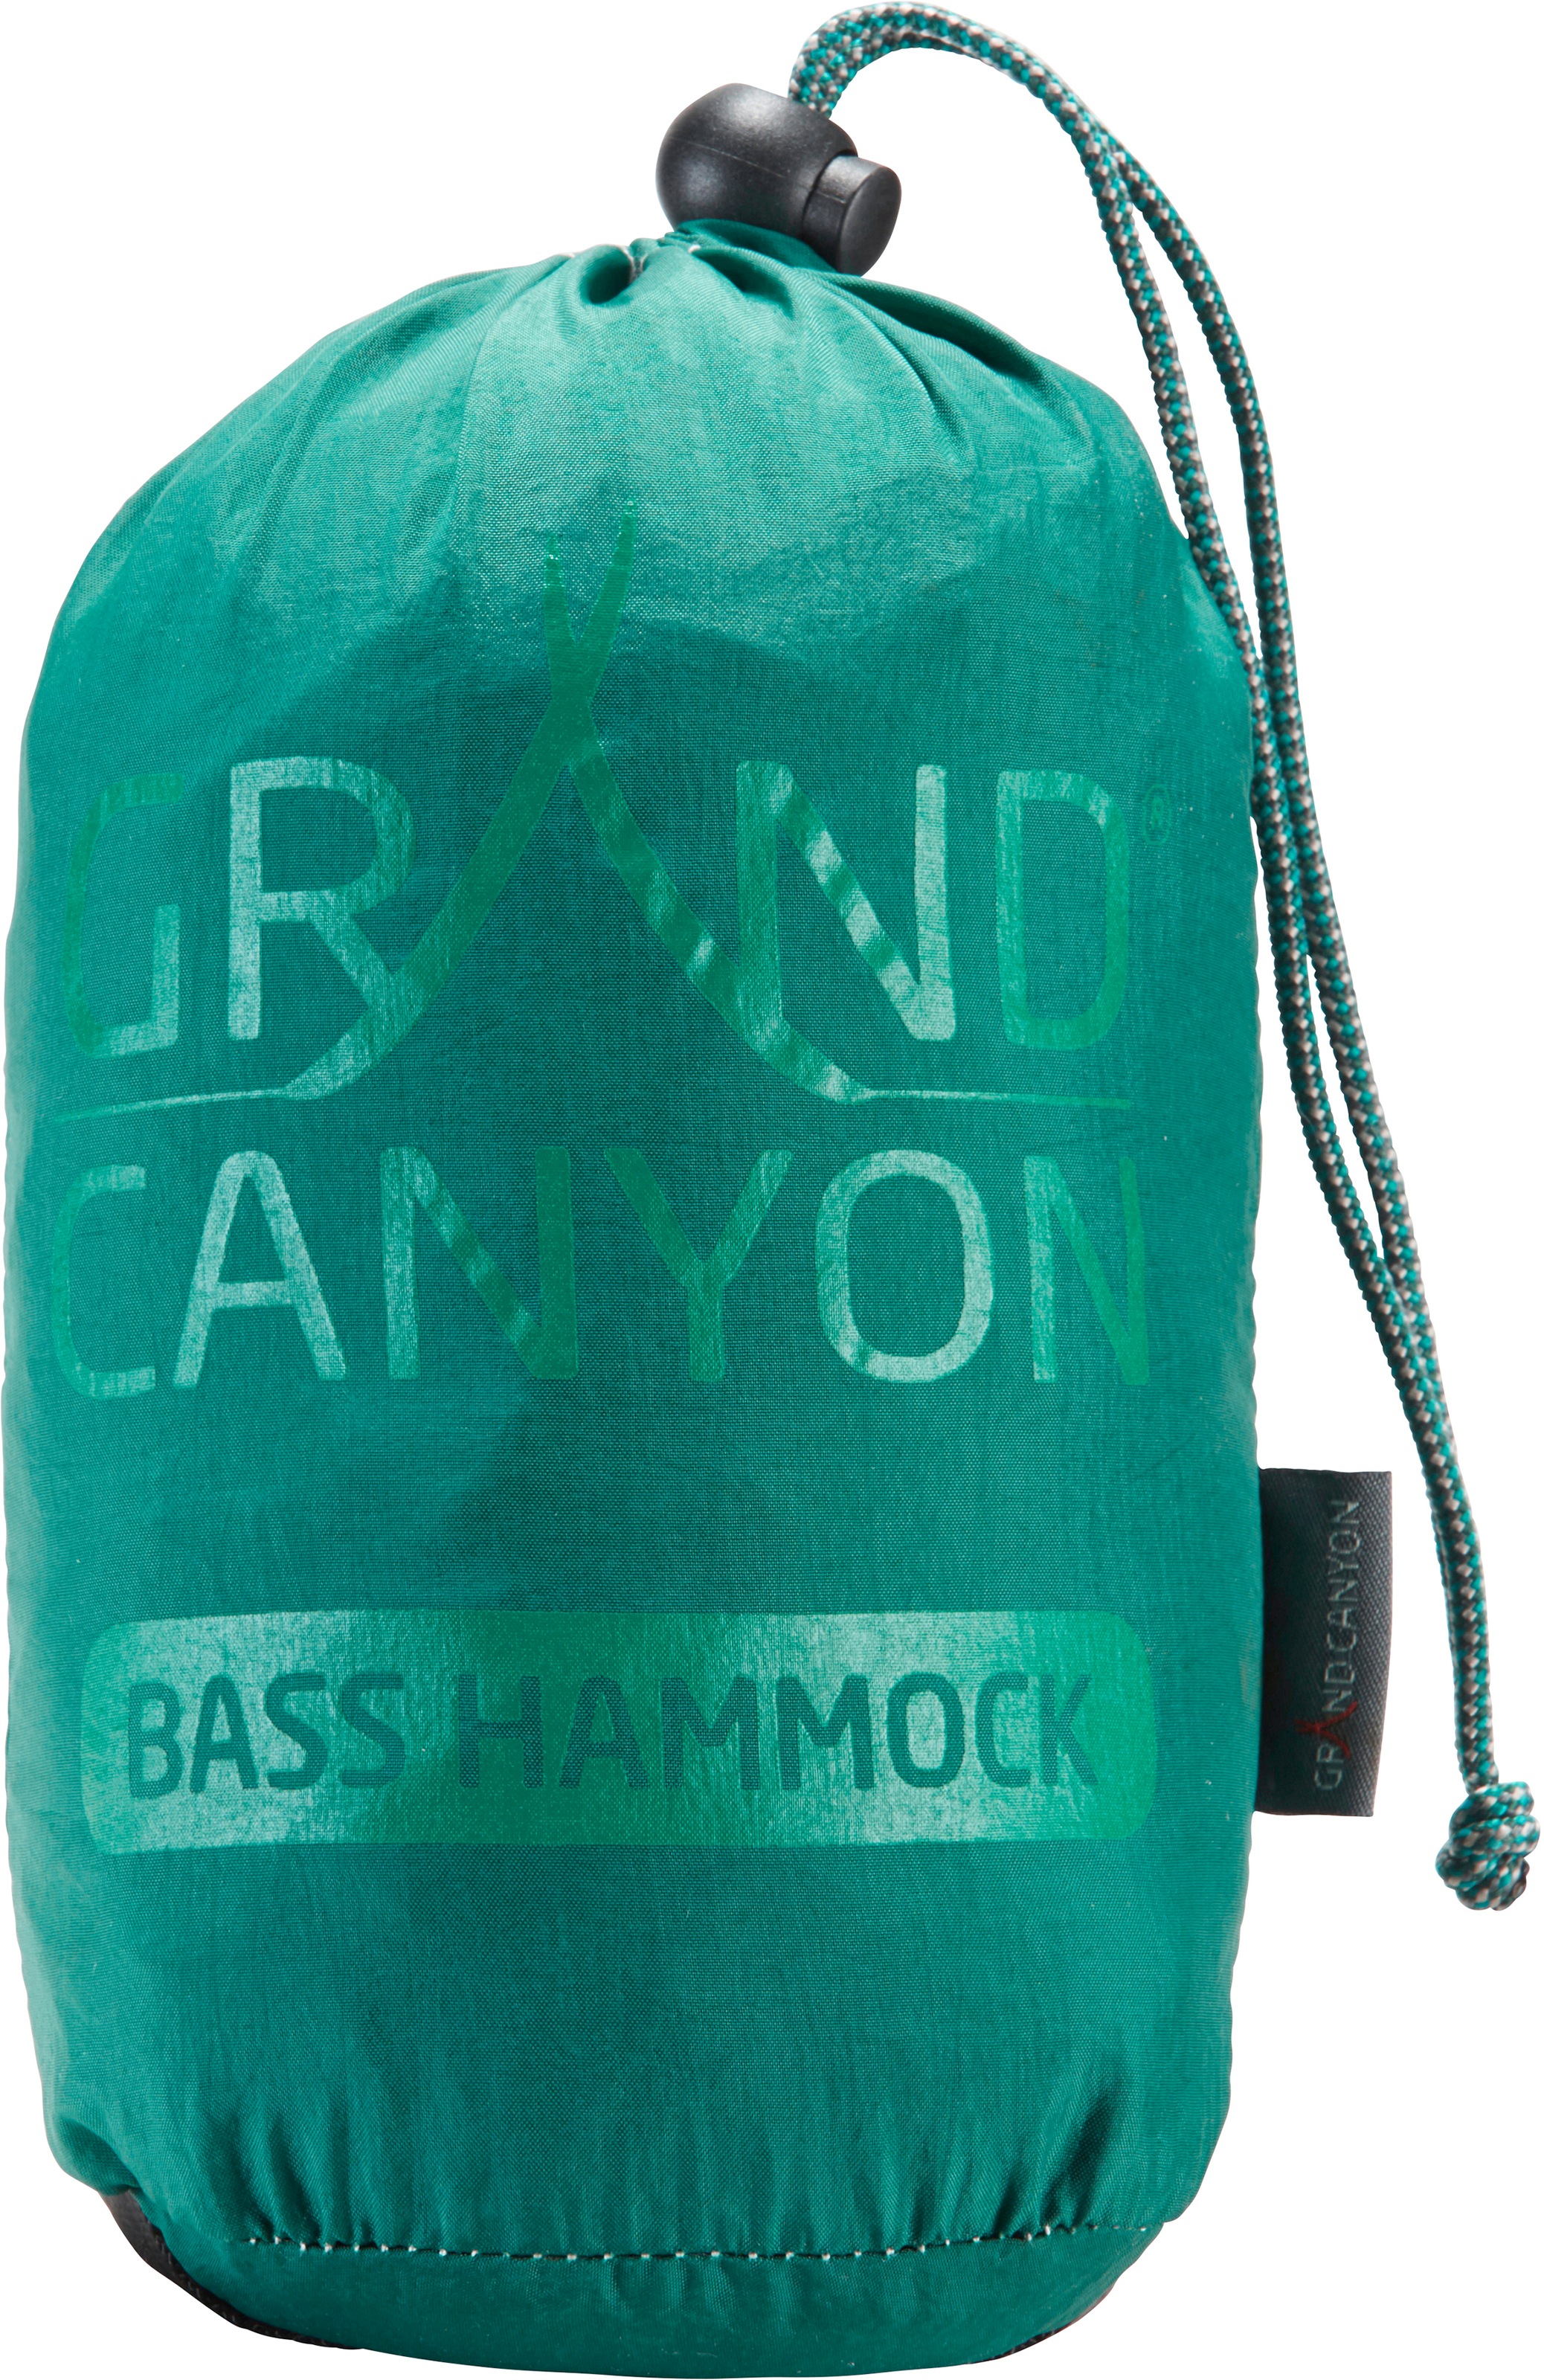 GRAND CANYON Hängematte »Bass Hammock«